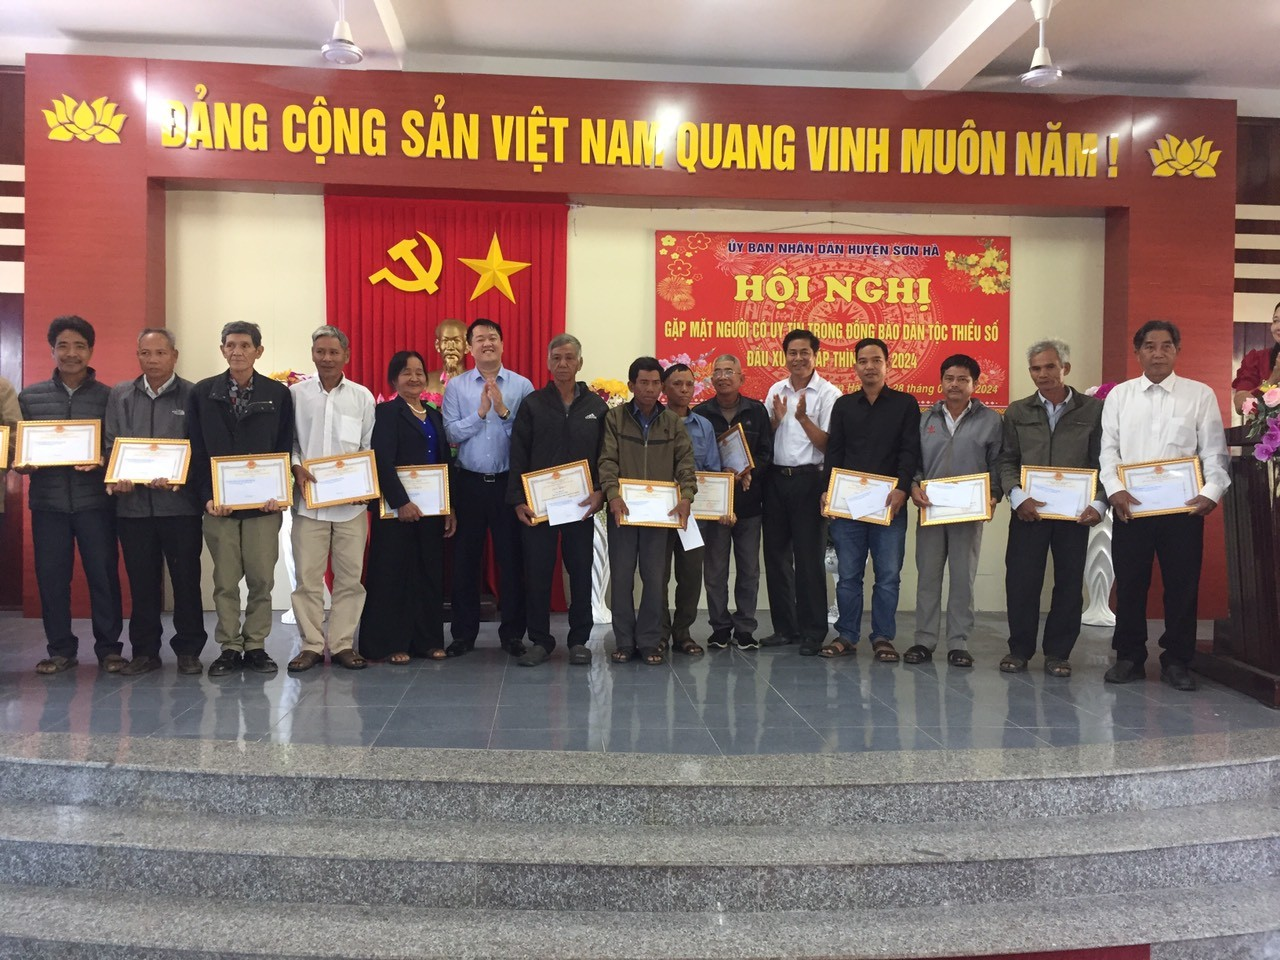 Huyện Sơn Hà tổ chức Hội nghị gặp mặt người có uy tín trong đồng trong đồng bào dân tộc thiểu số đầu xuân Giáp Thìn - 2024